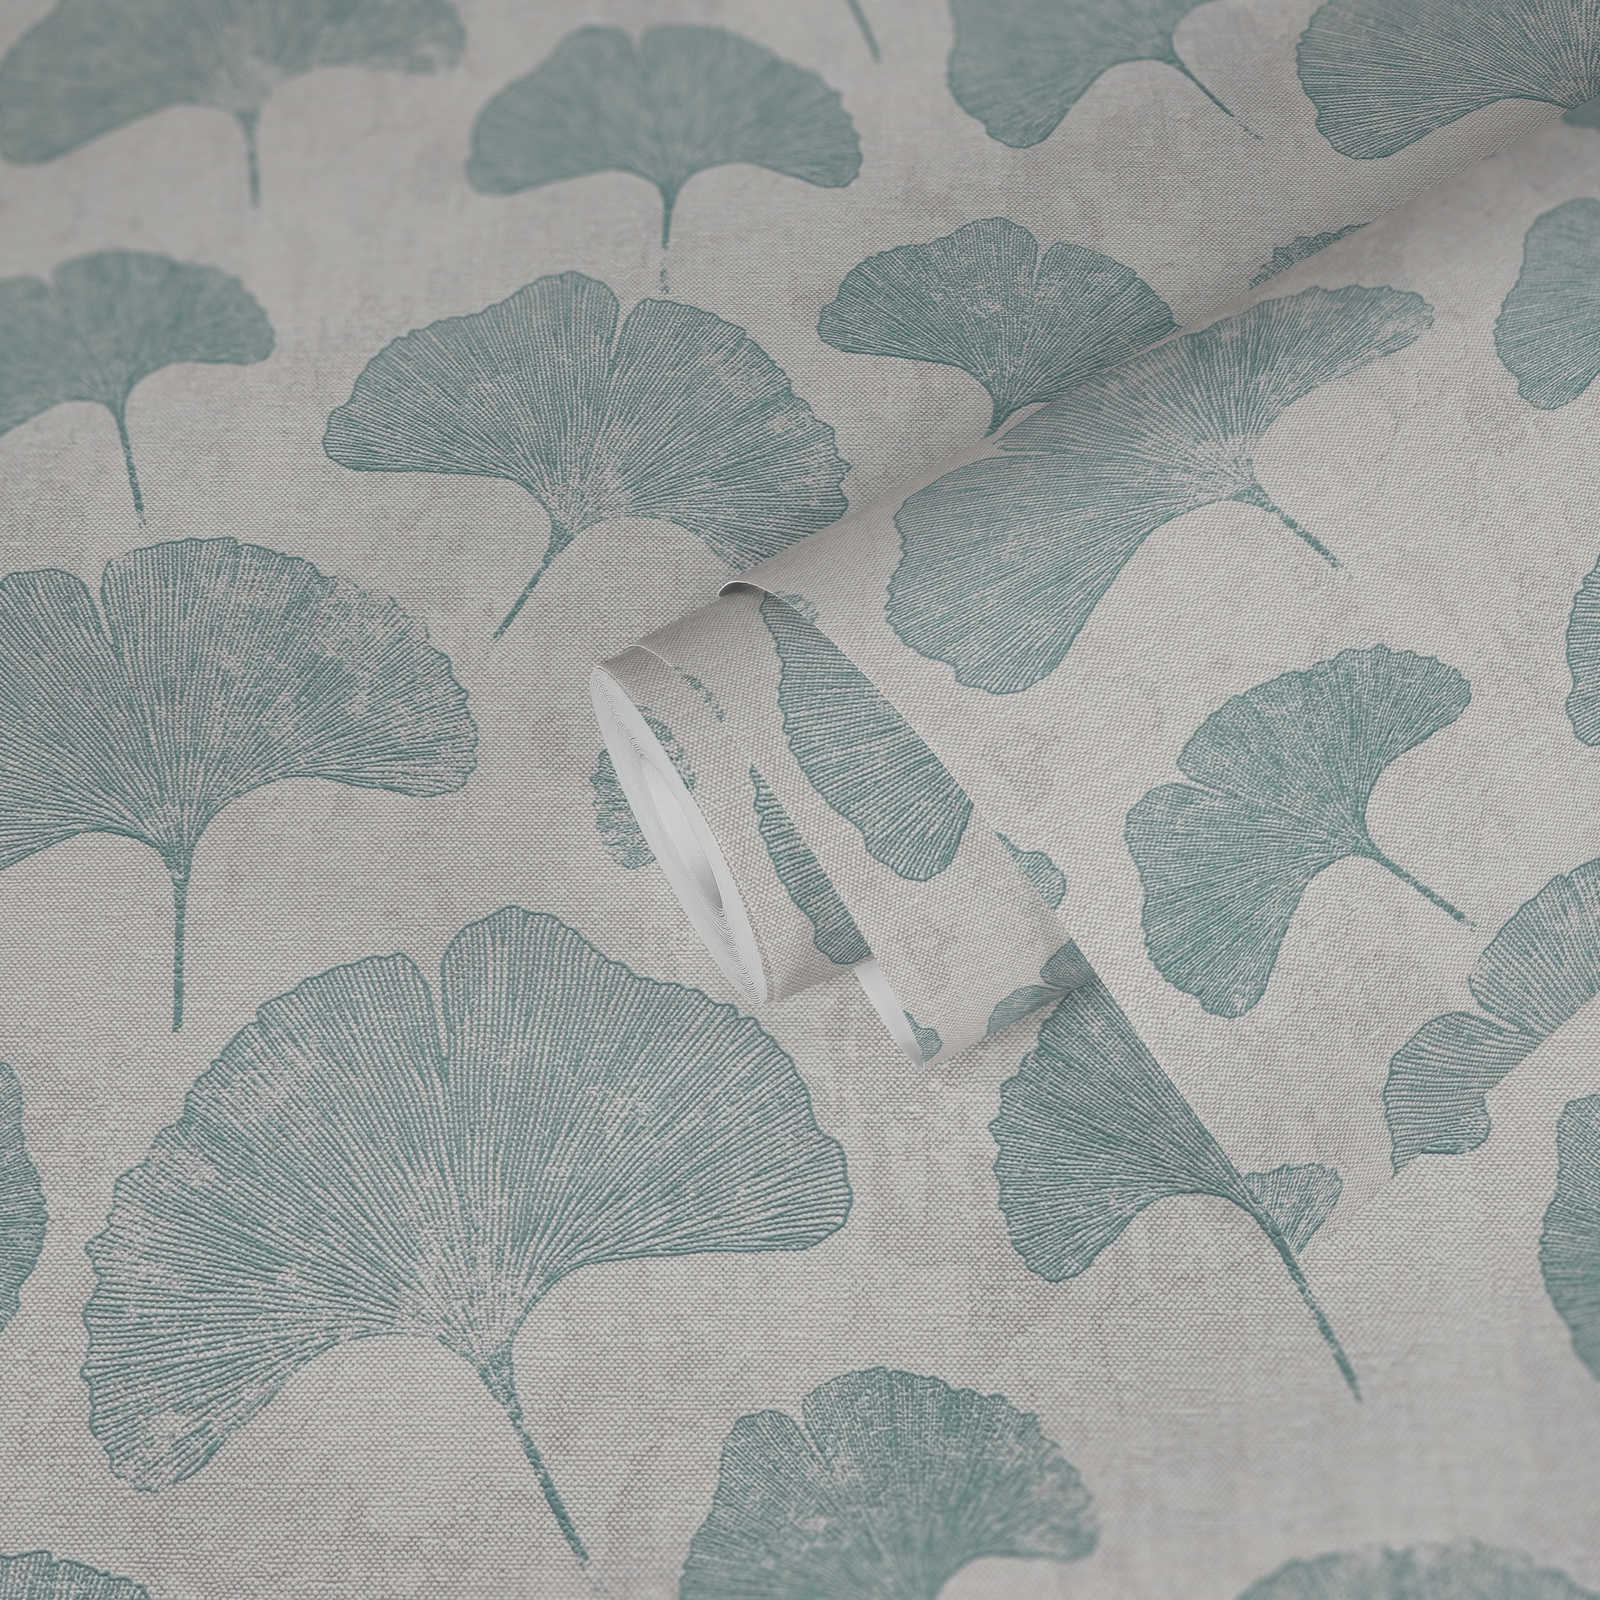             Floral leaves wallpaper matt textured - mint, grey
        